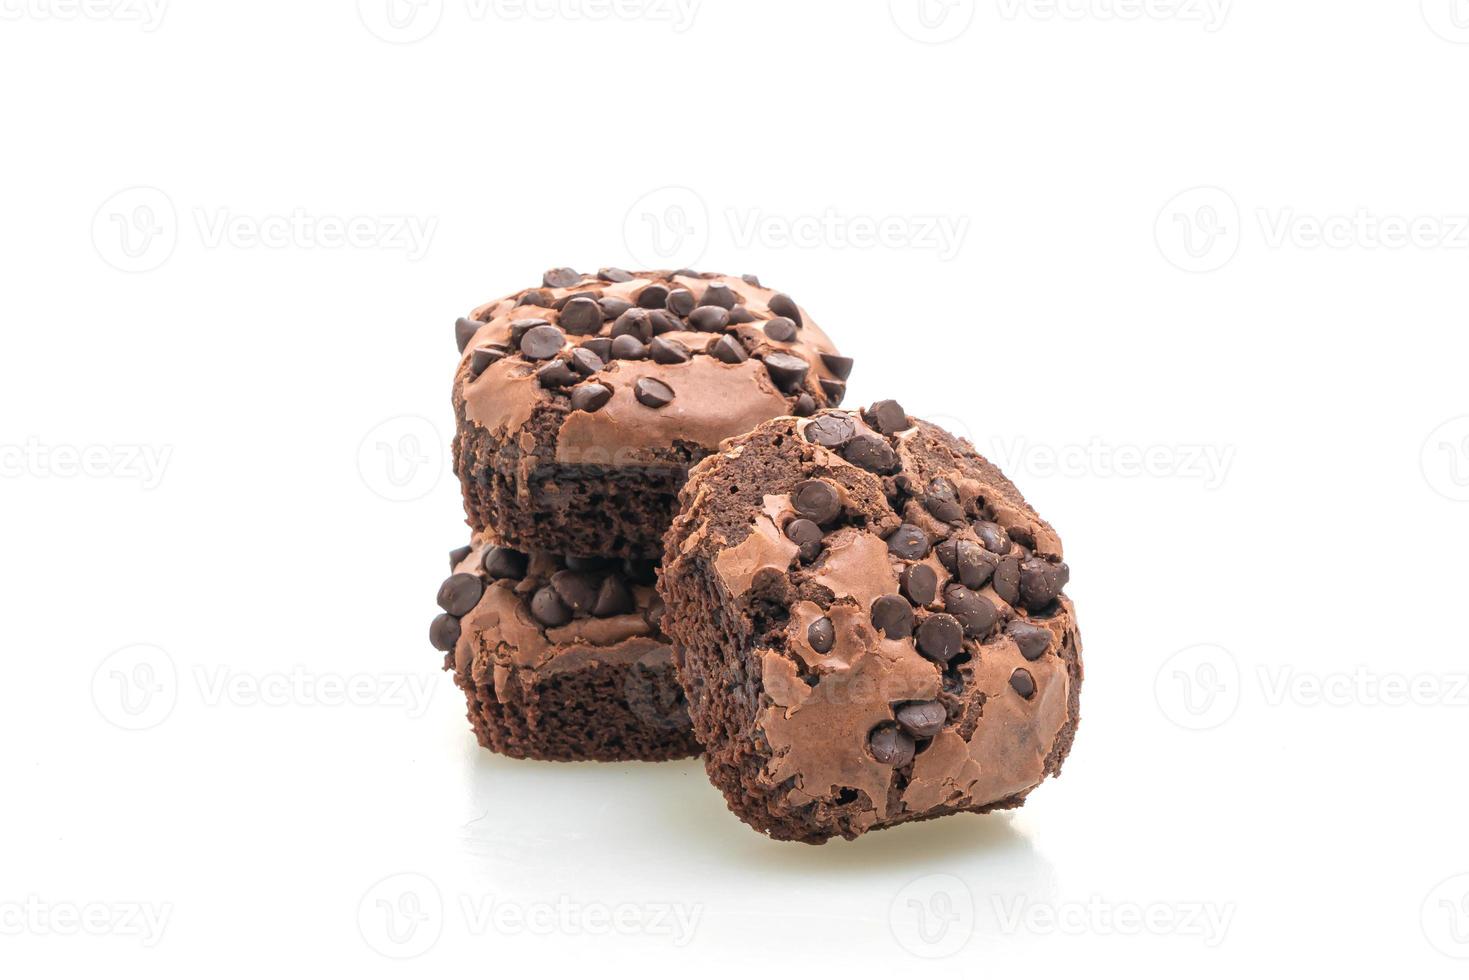 Brownies al cioccolato fondente con gocce di cioccolato sopra foto